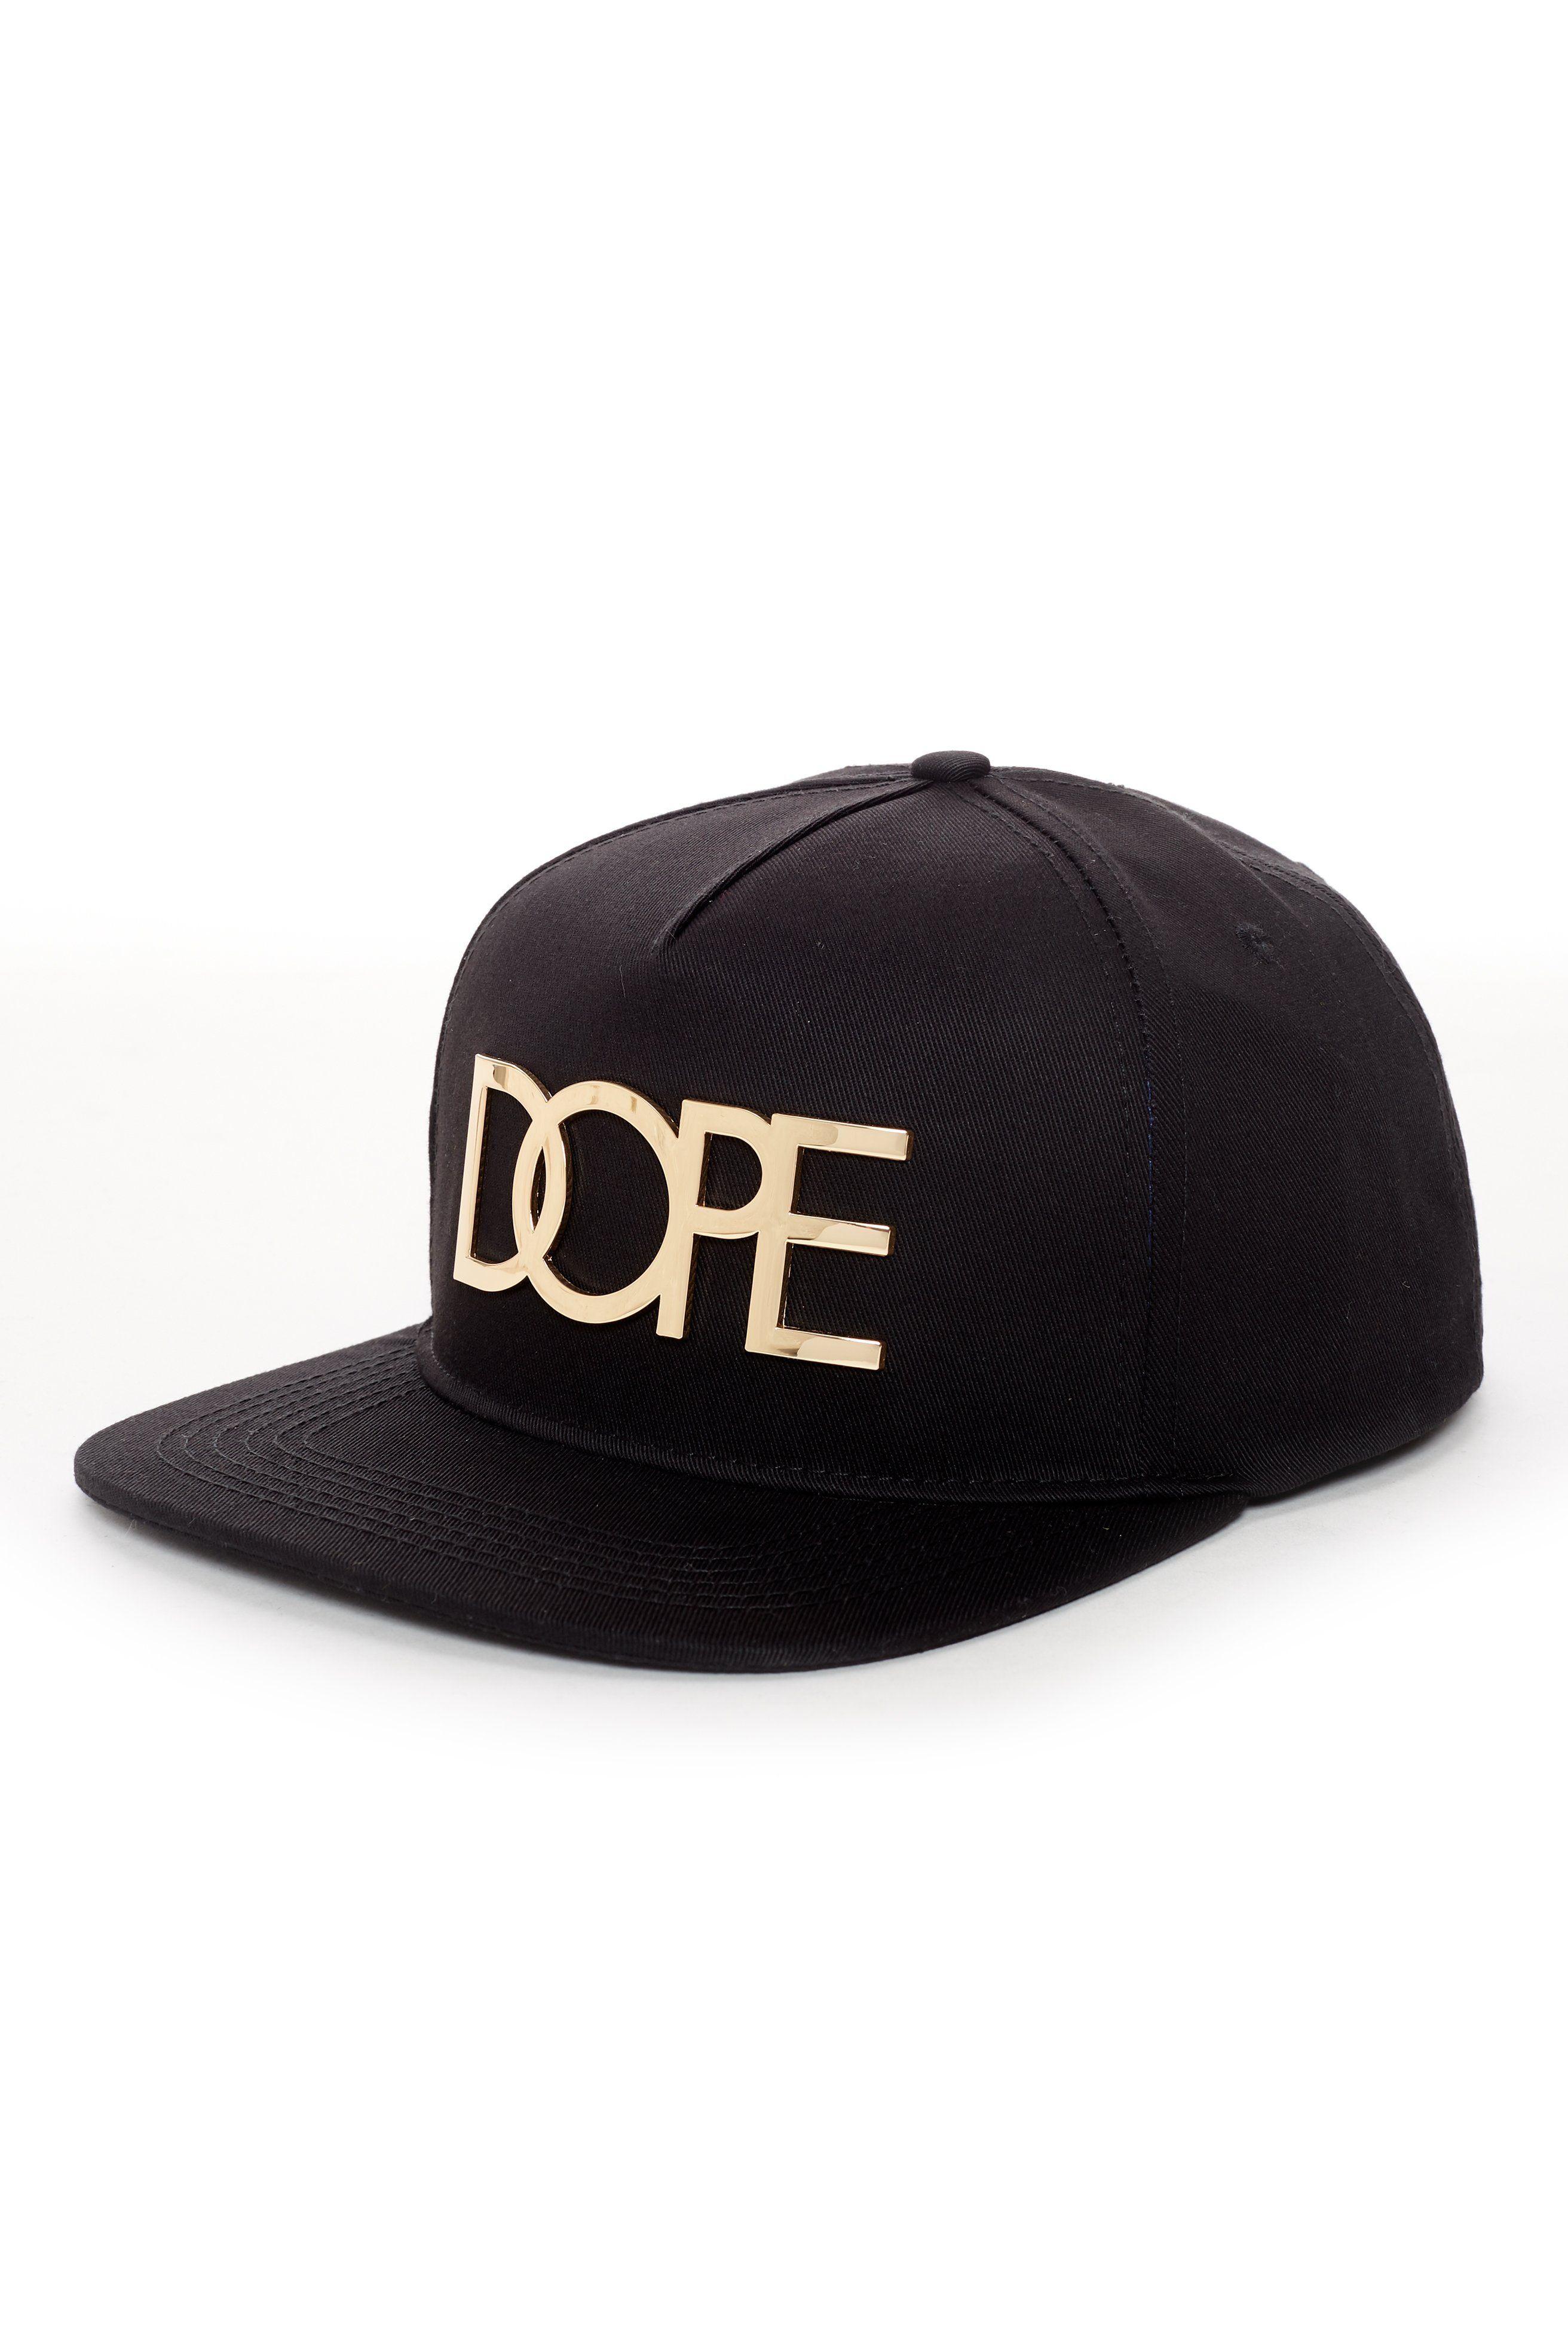 Dope Clothing Logo - 24k Gold Logo Snapback Hat